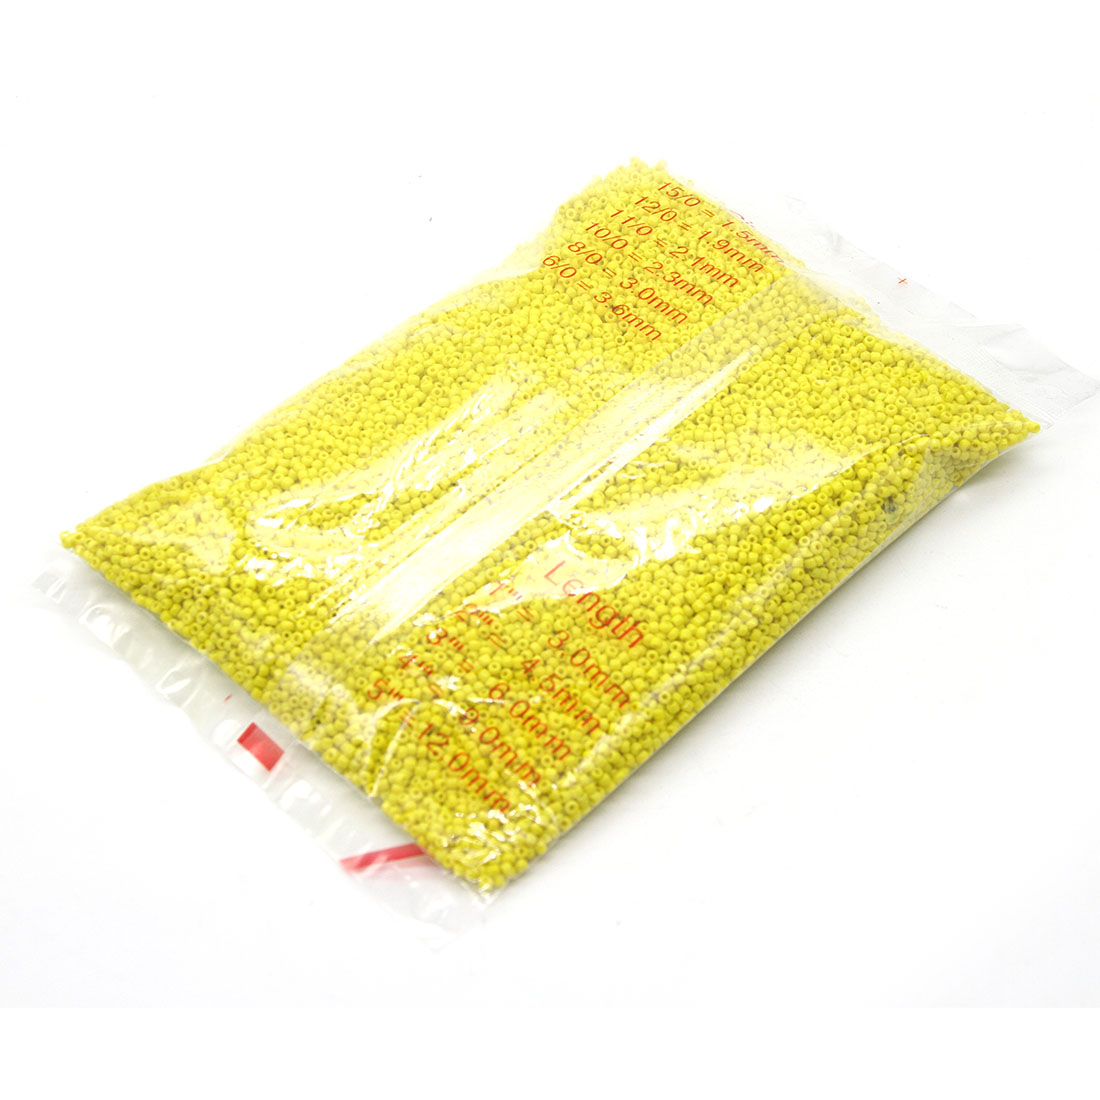 Yellow 2mm 30,000 packs